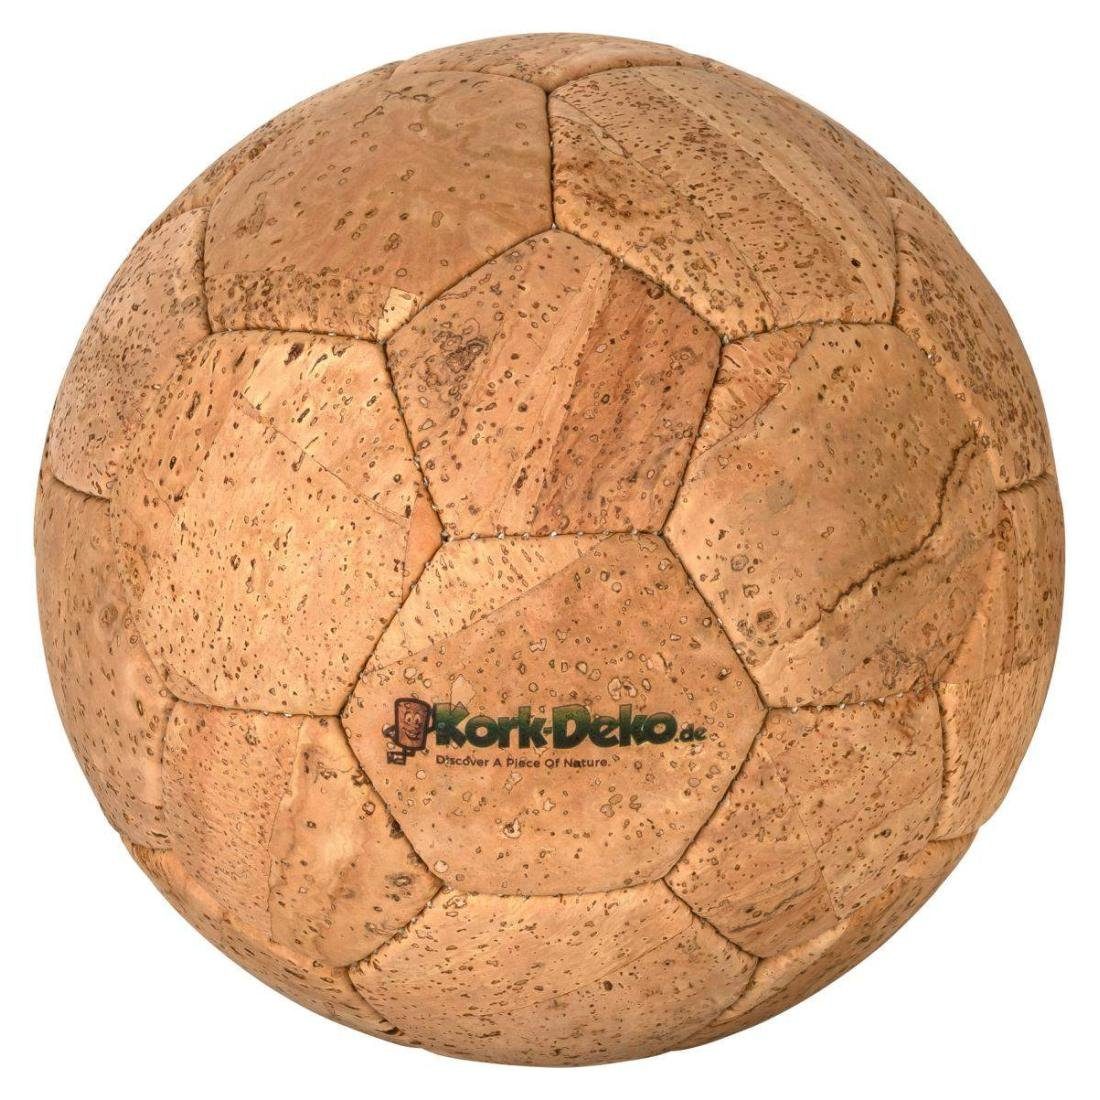 Kork-Deko.de Fußball aus Kork Plastik Alternative Leder und zum als